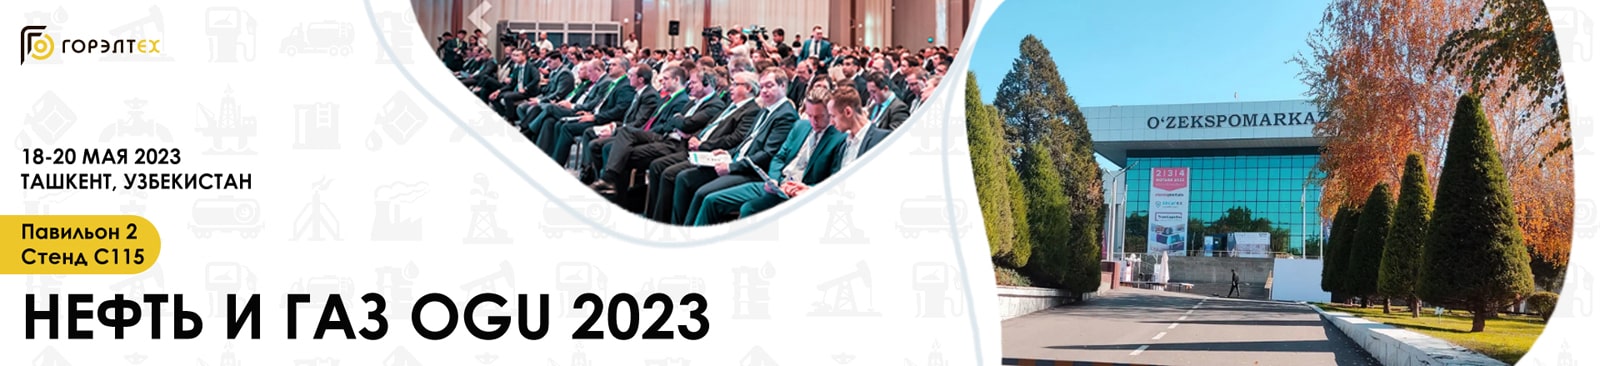 25-я Международная выставка и конференция «Нефть и газ Узбекистана – OGU 2023», Узбекистан, г. Ташкент